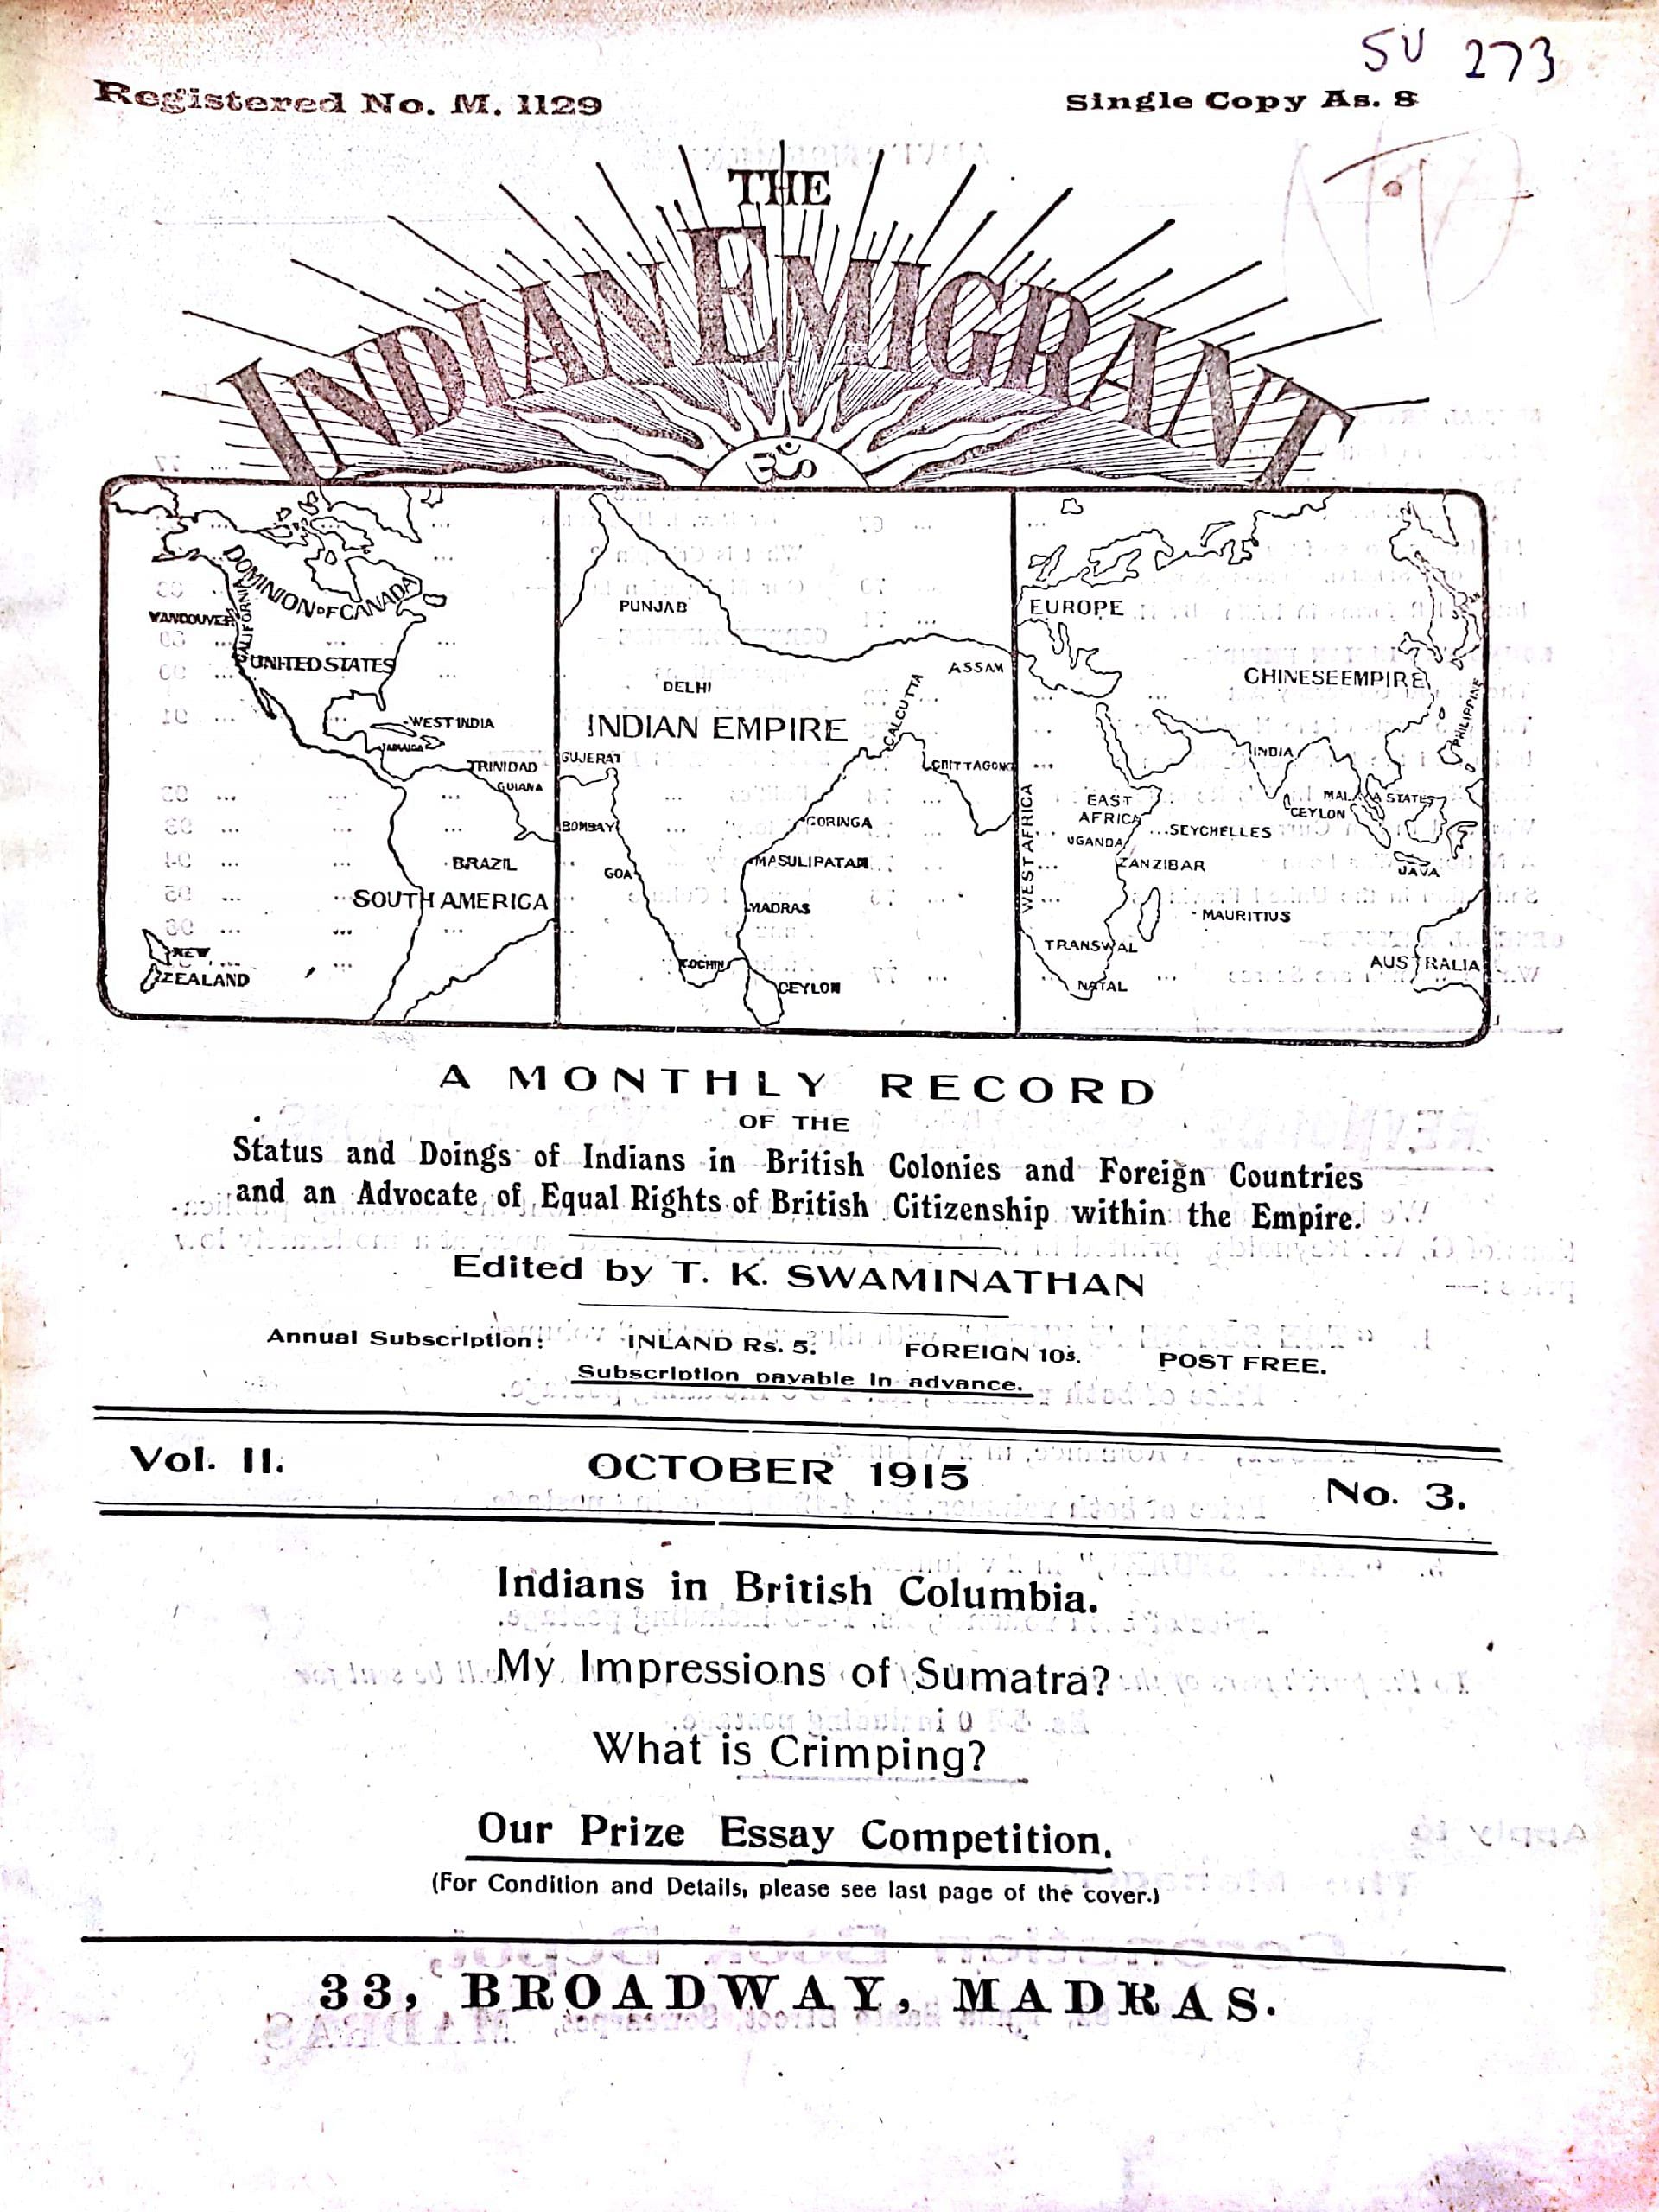 Indian Emigrant, Vol 2, 1915-1916